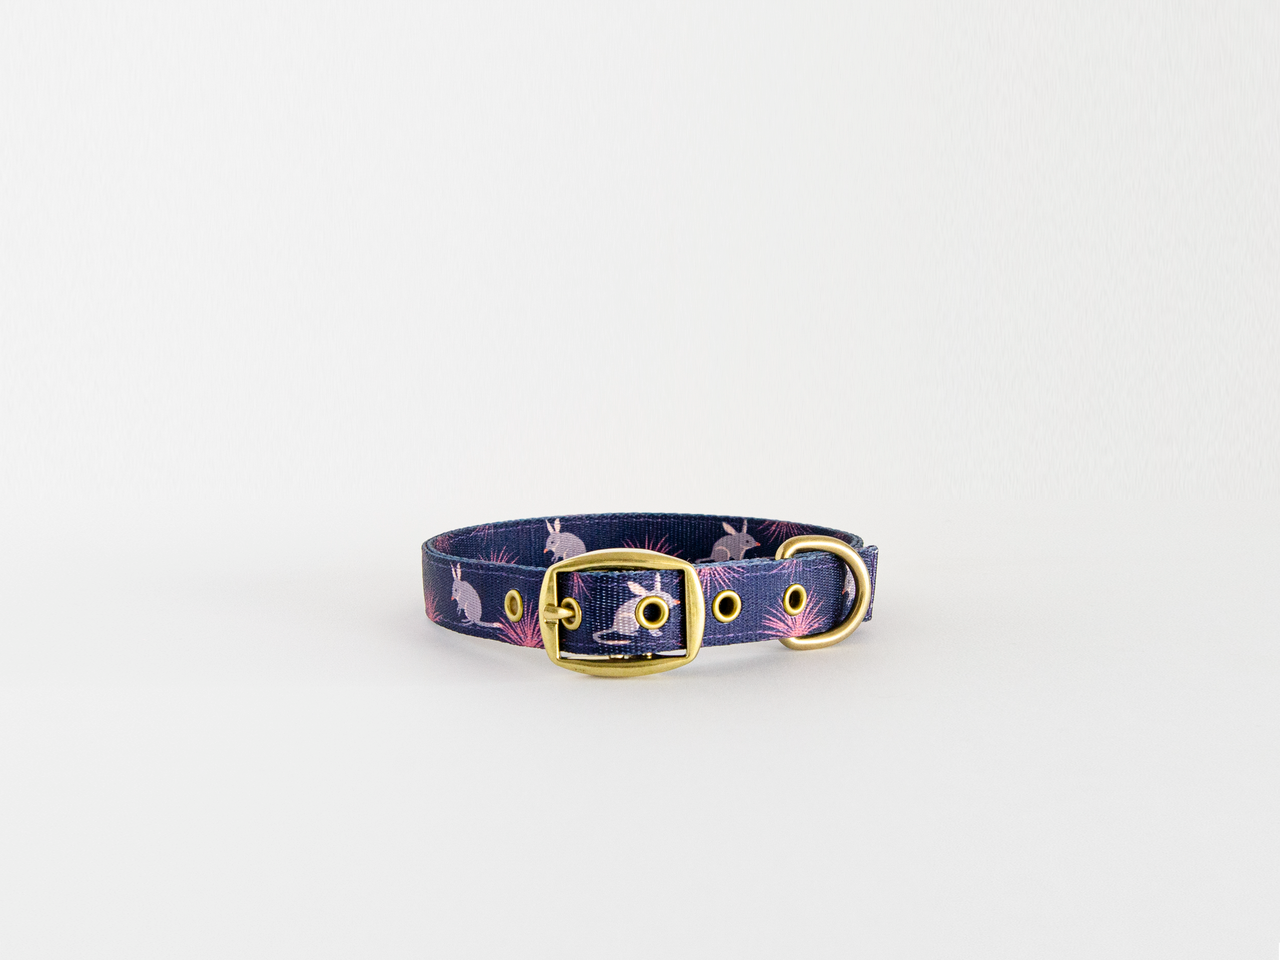 Anipal Dog Collar - Billie the Bilby